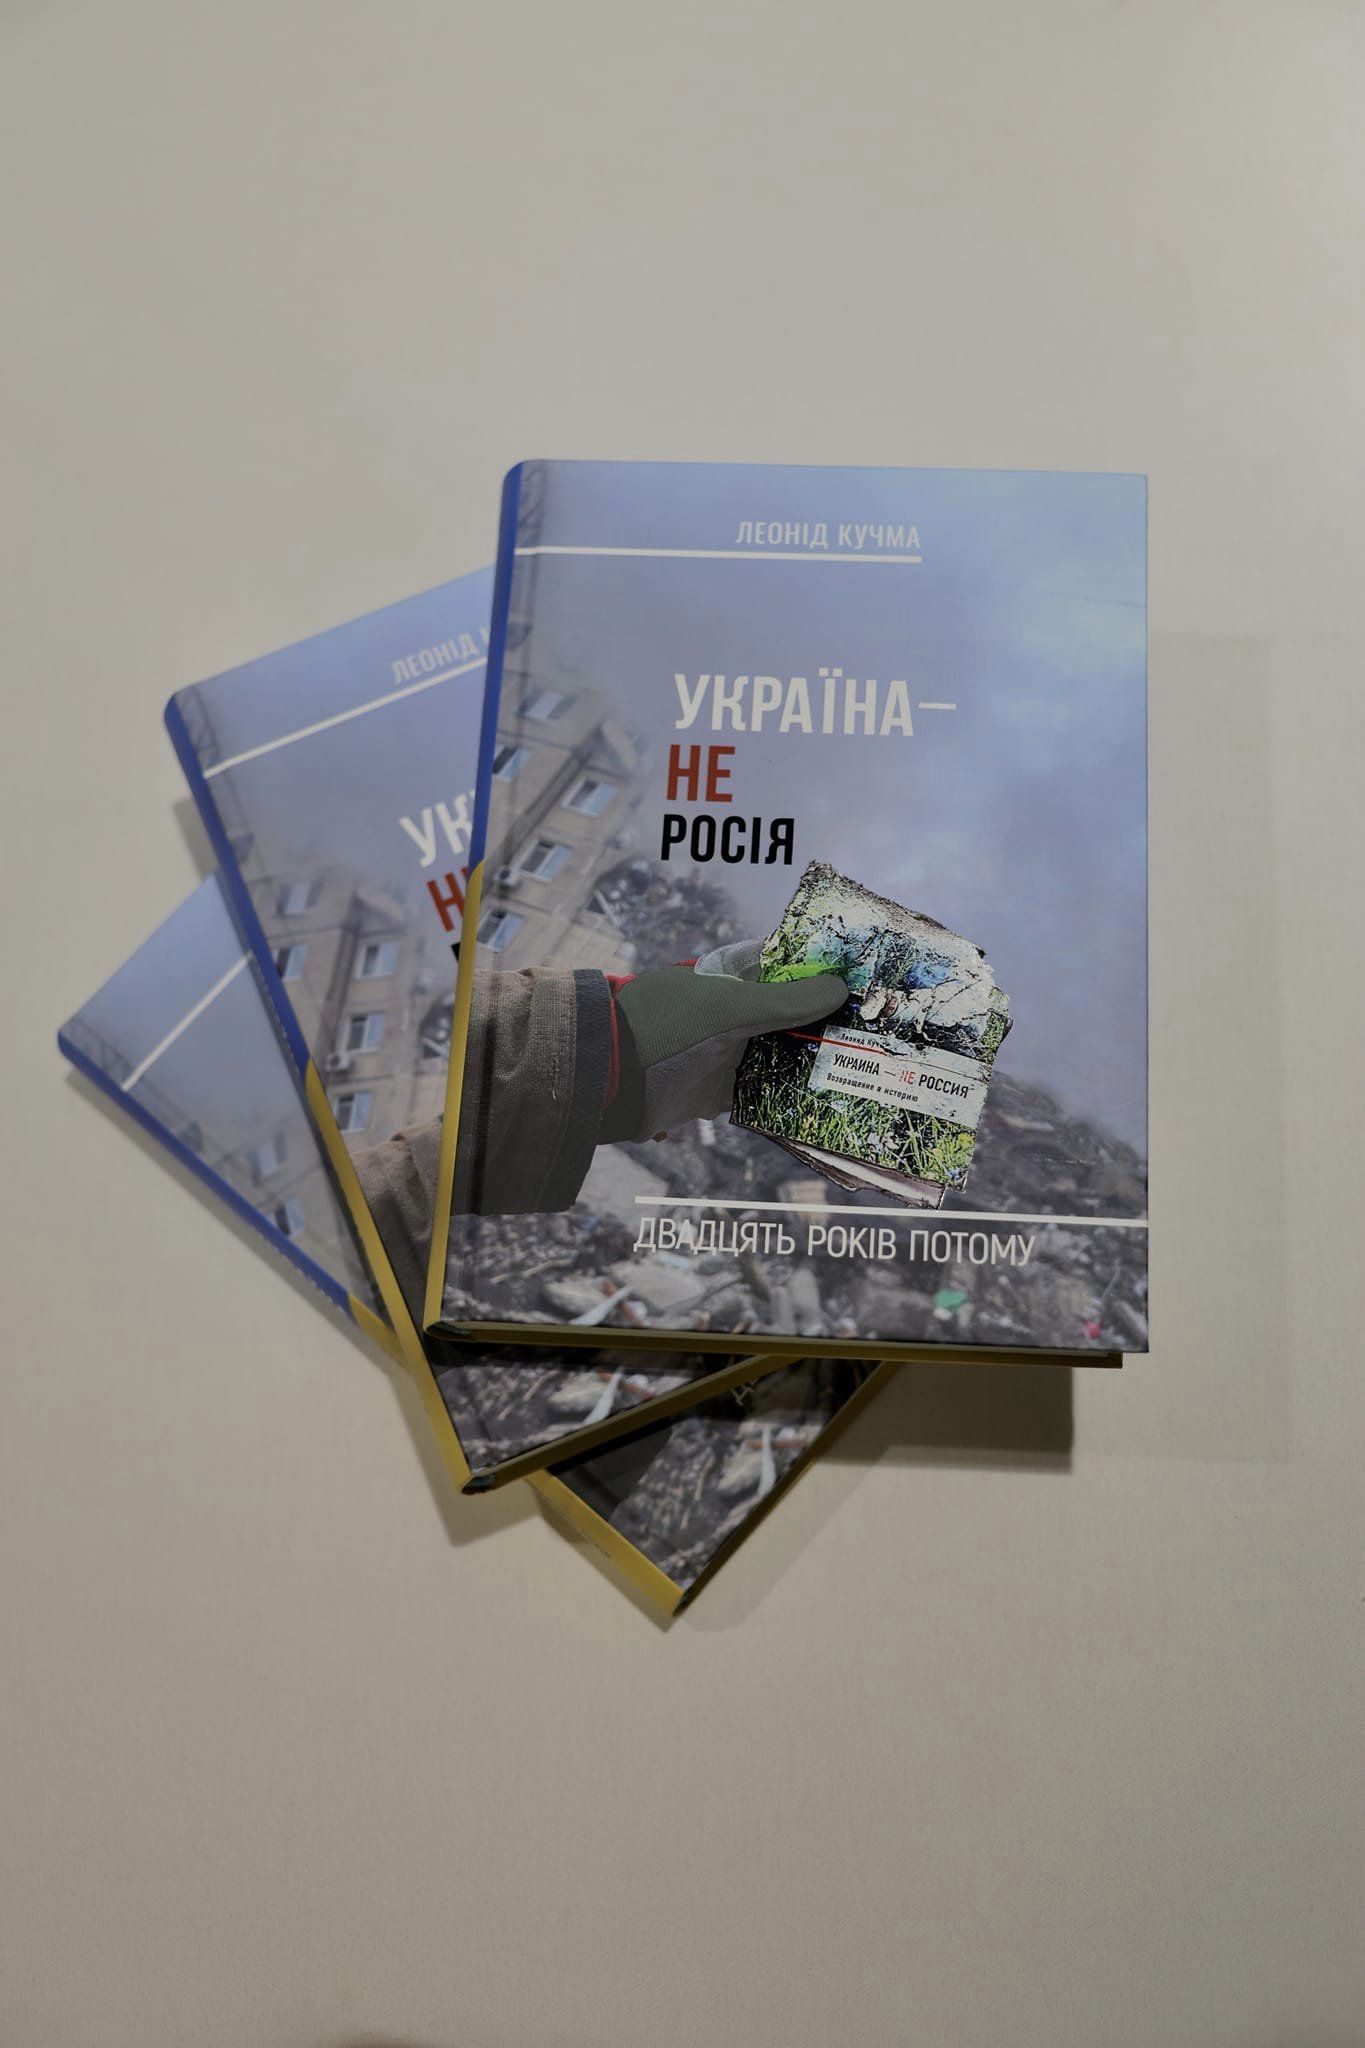 «Україна - не Росія. Двадцять років потому»: Кучма презентував новий бестселер